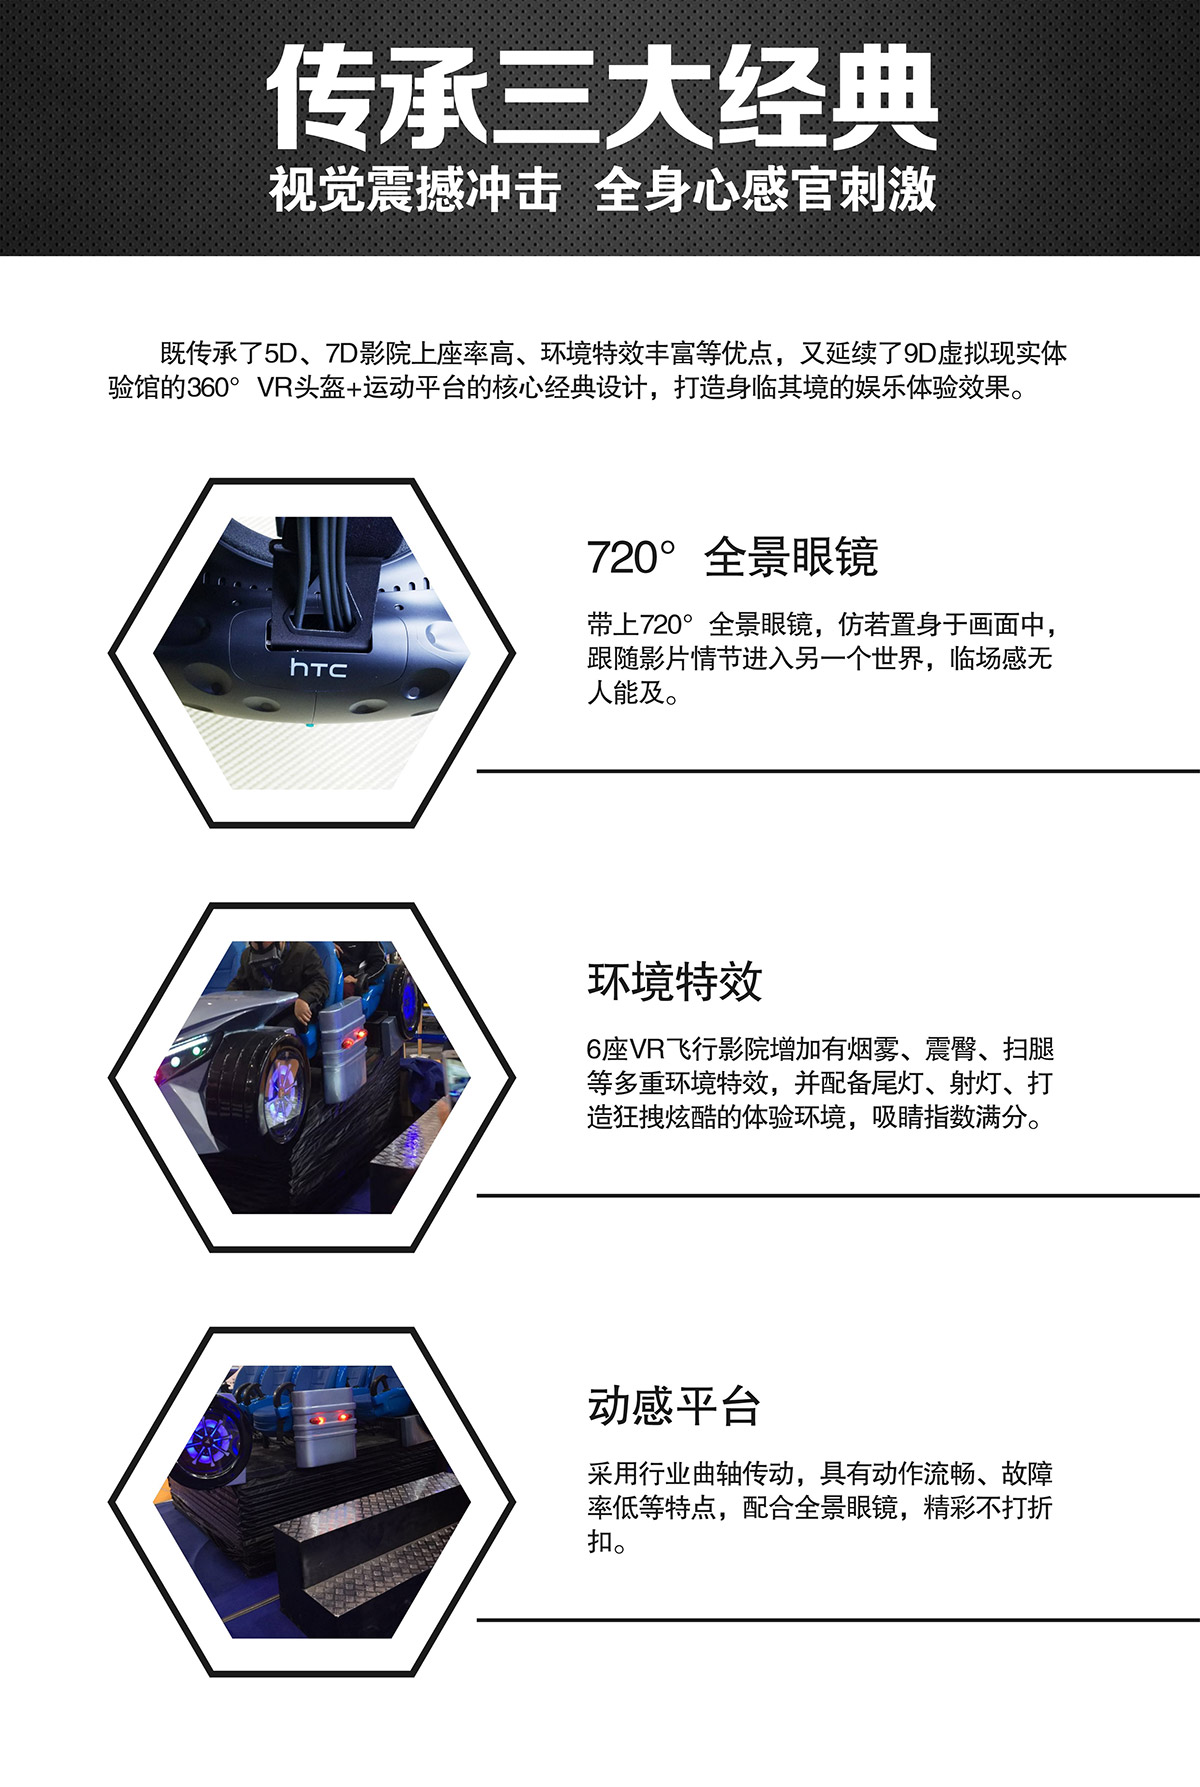 社区安全VR虚拟飞行体验馆视觉震撼冲击.jpg